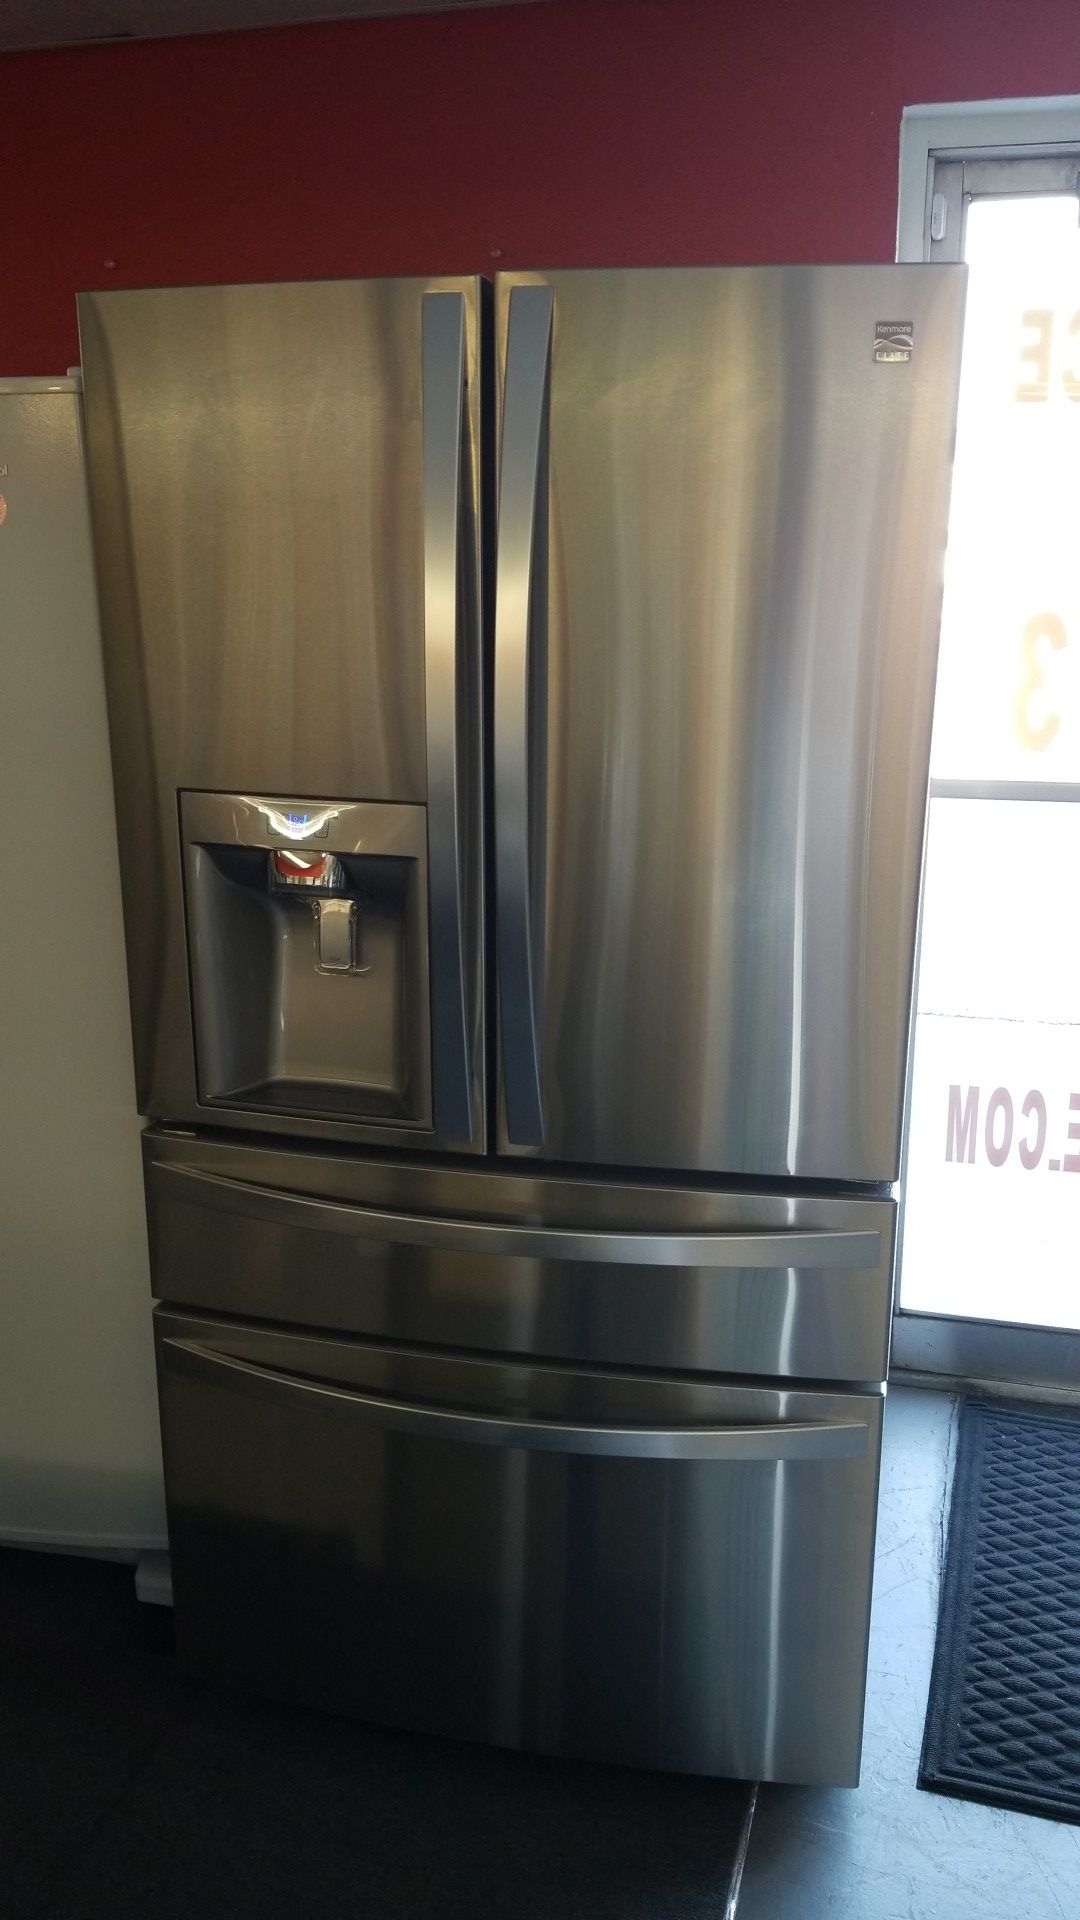 New scratch and dent Kenmore elite 32cu.ft 4 door fridge stainless steel 1 year warranty